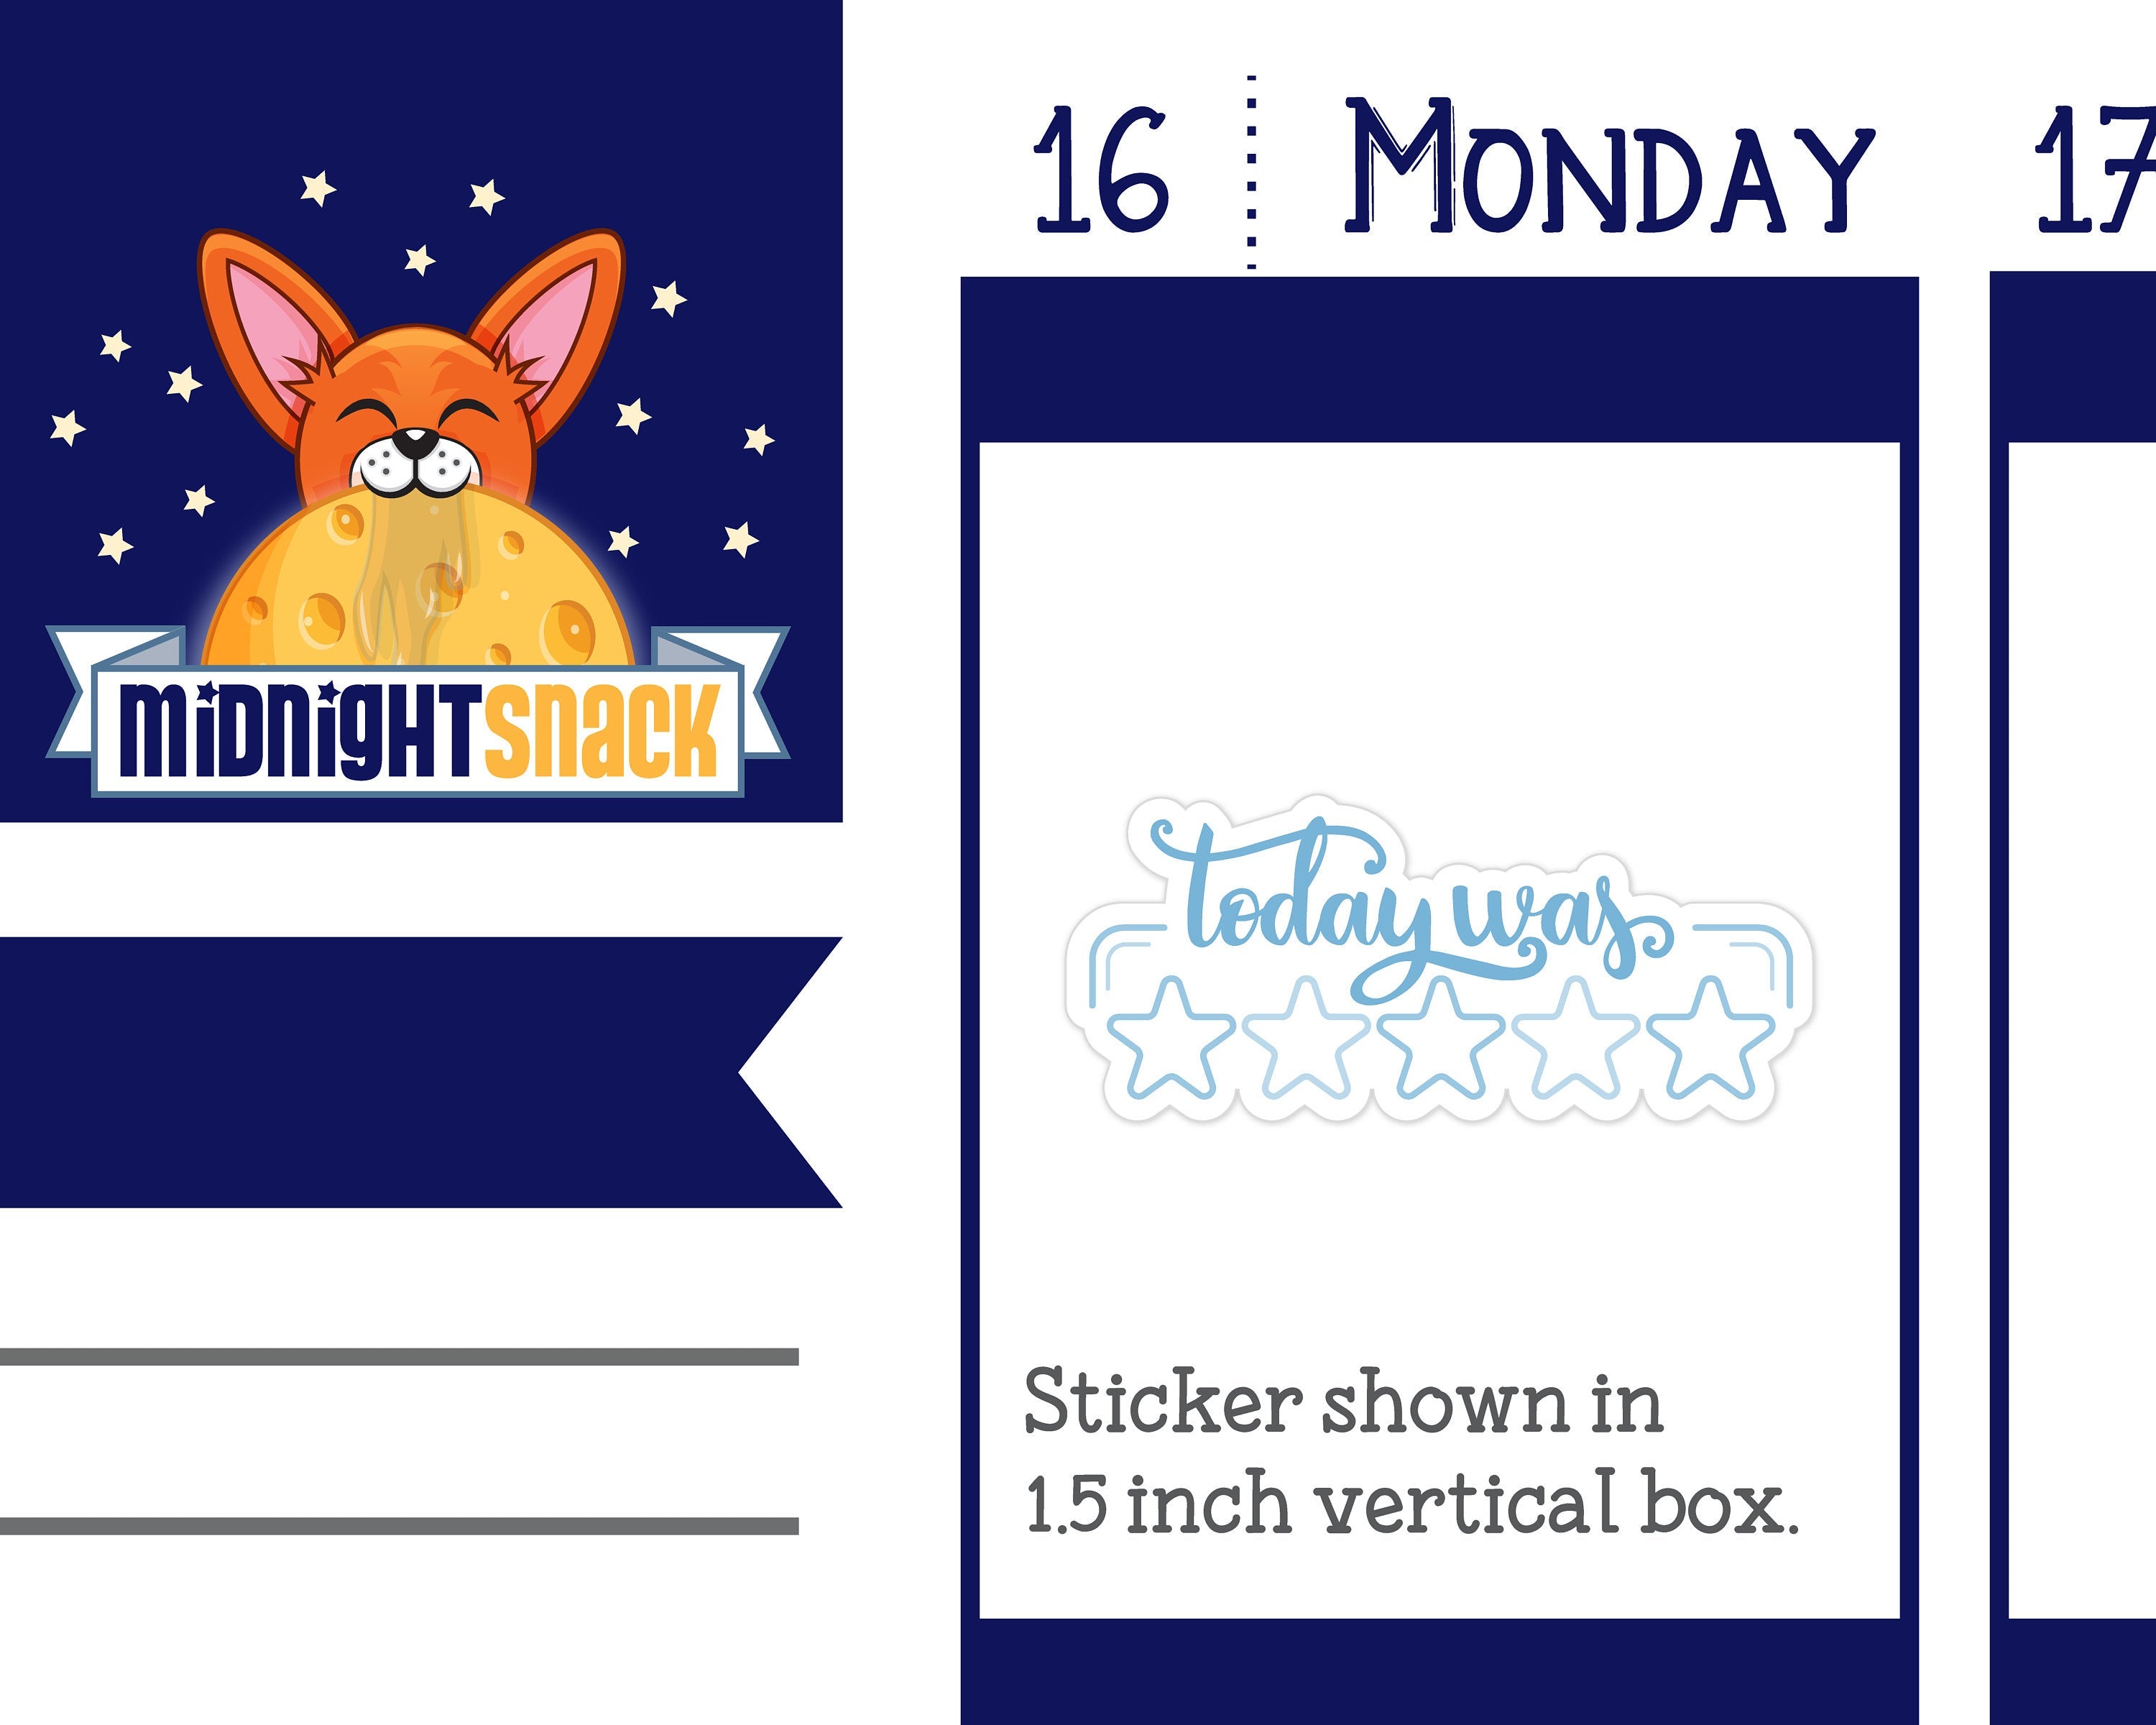 Today Was 5 Star Tracking Sticker: Well-being Planner Sticker Midnight Snack Planner